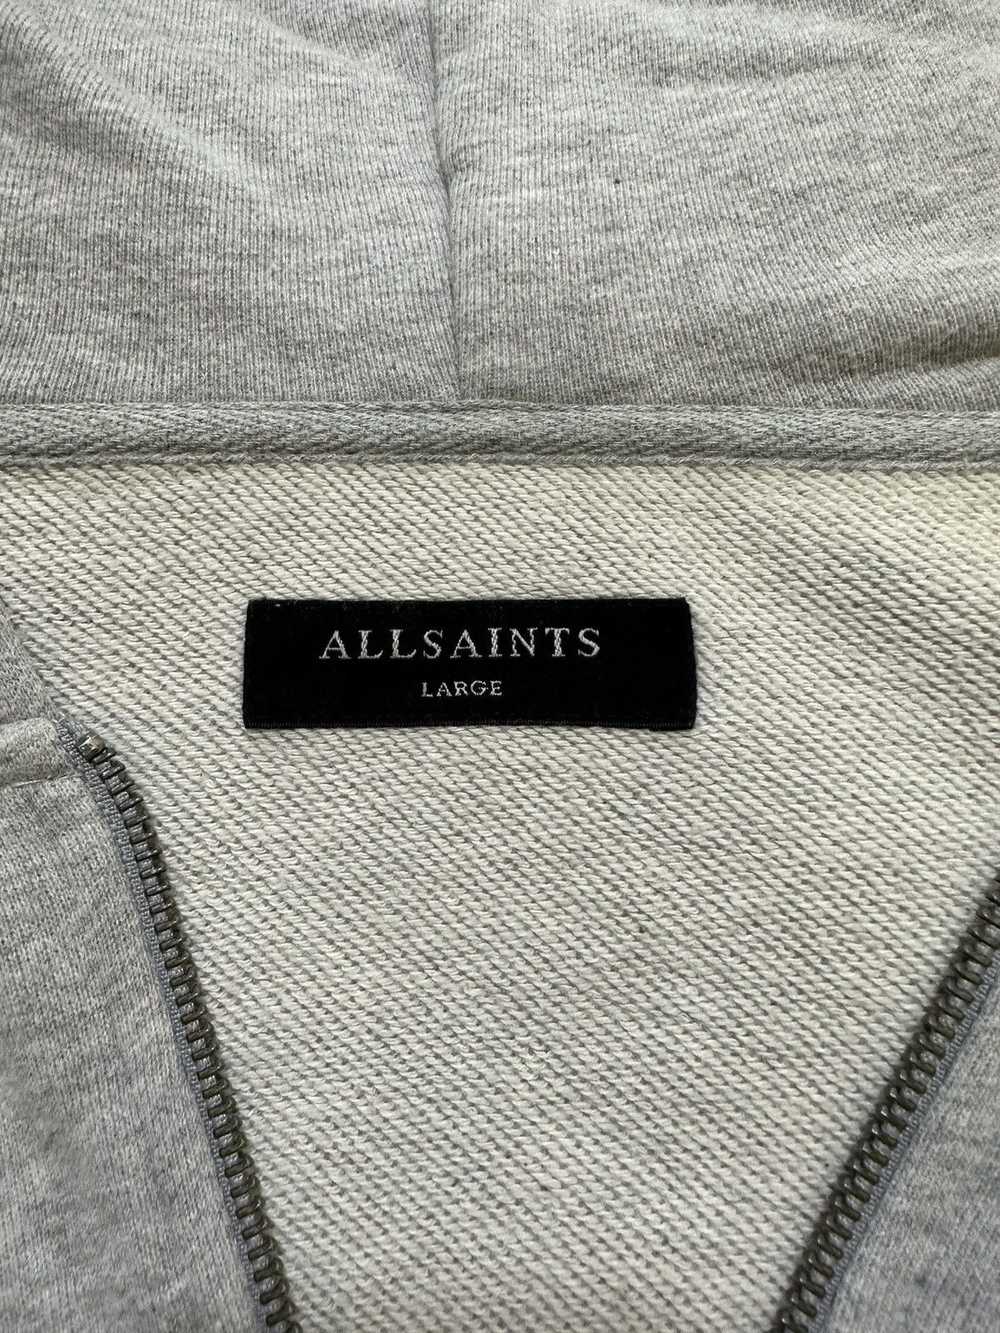 Allsaints × Avant Garde × Japanese Brand All Sain… - image 5